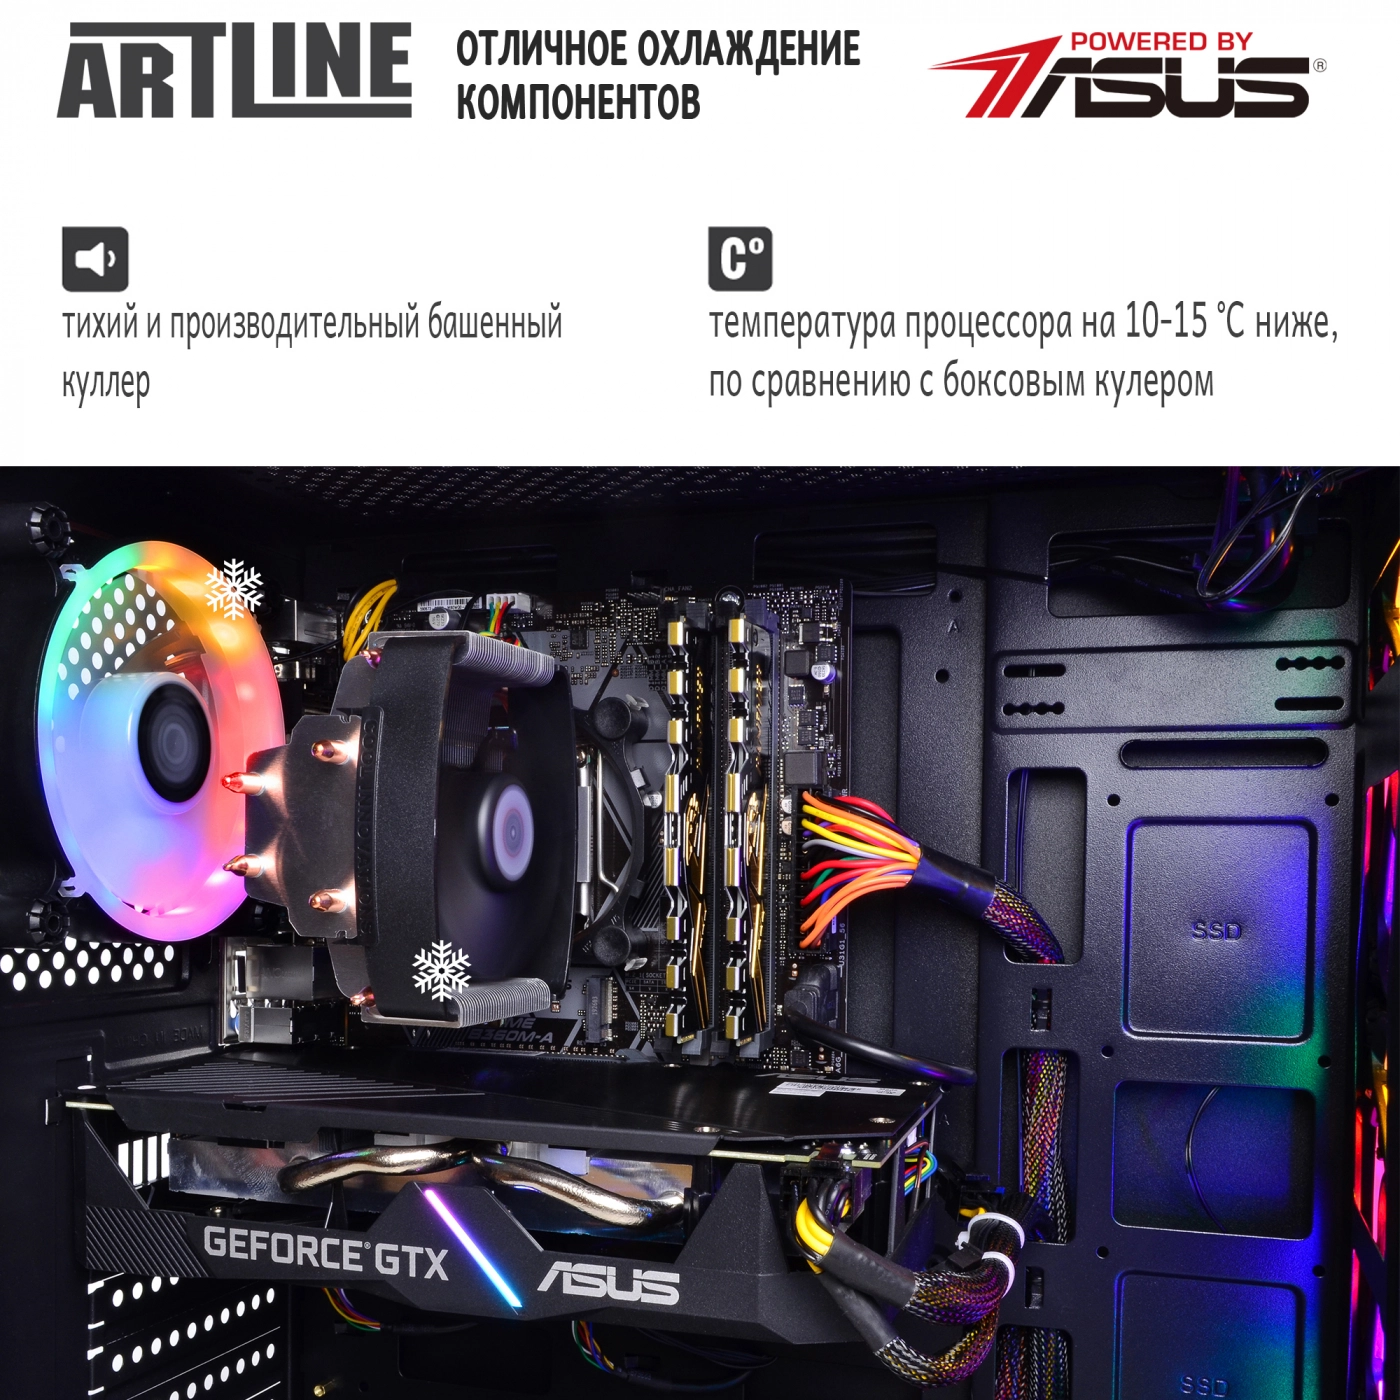 Купить Компьютер ARTLINE Gaming X73v20 - фото 7